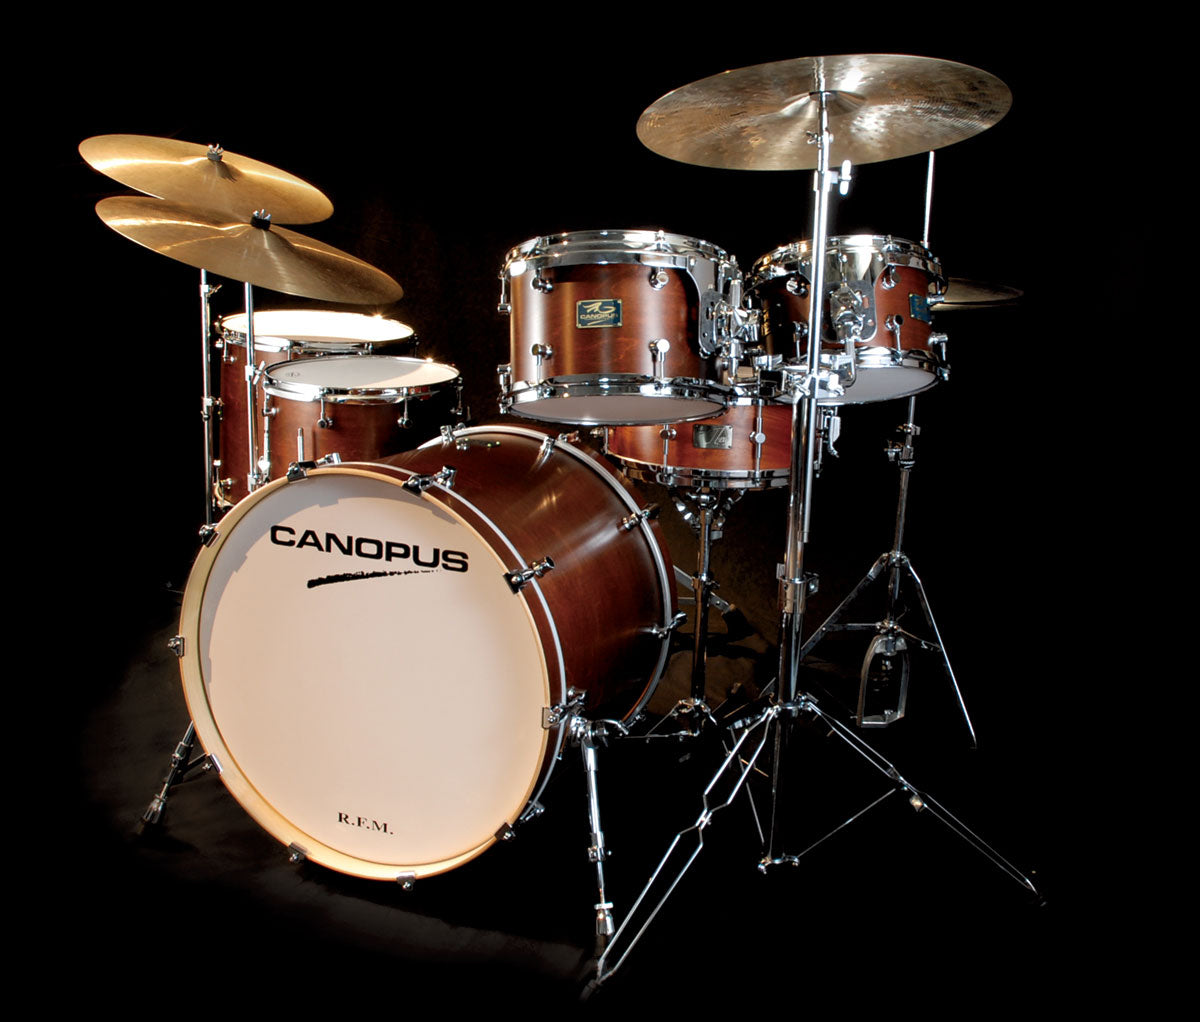 Canopus 3-Piece R.F.M. Series 'Studio' Drum Kit